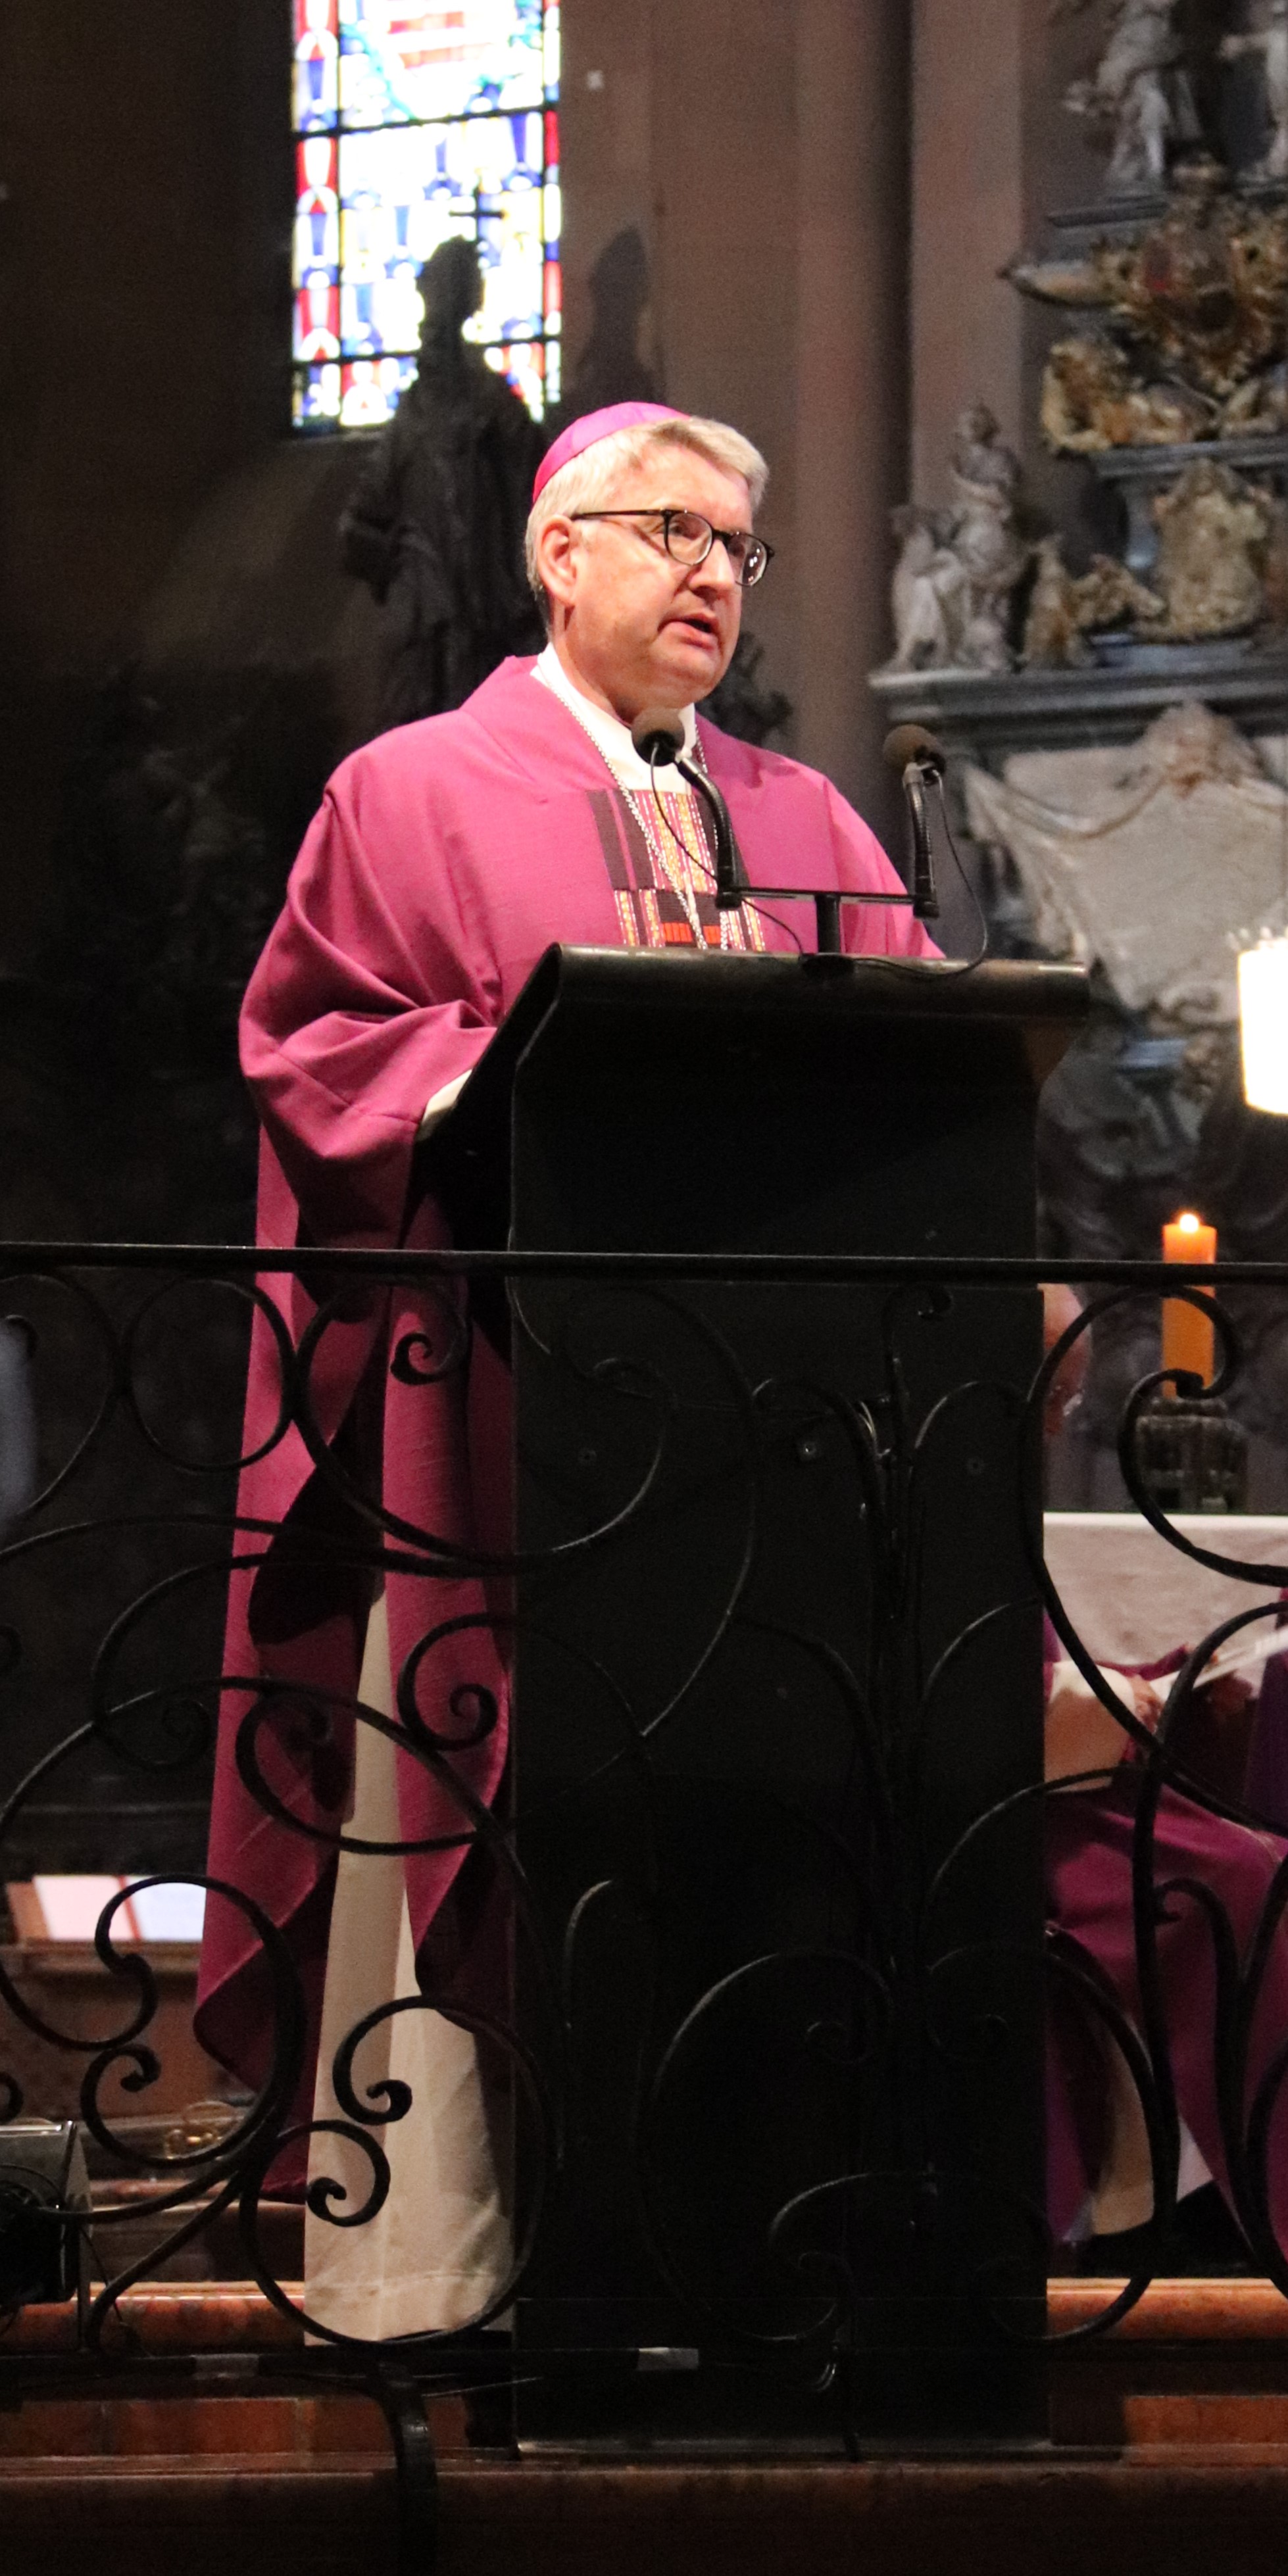 Bischof Kohlgraf predigte im Pontifikalrequiem zur Beisetzung von Weihbischof Eisenbach (c) Bistum Mainz/Hoffmann